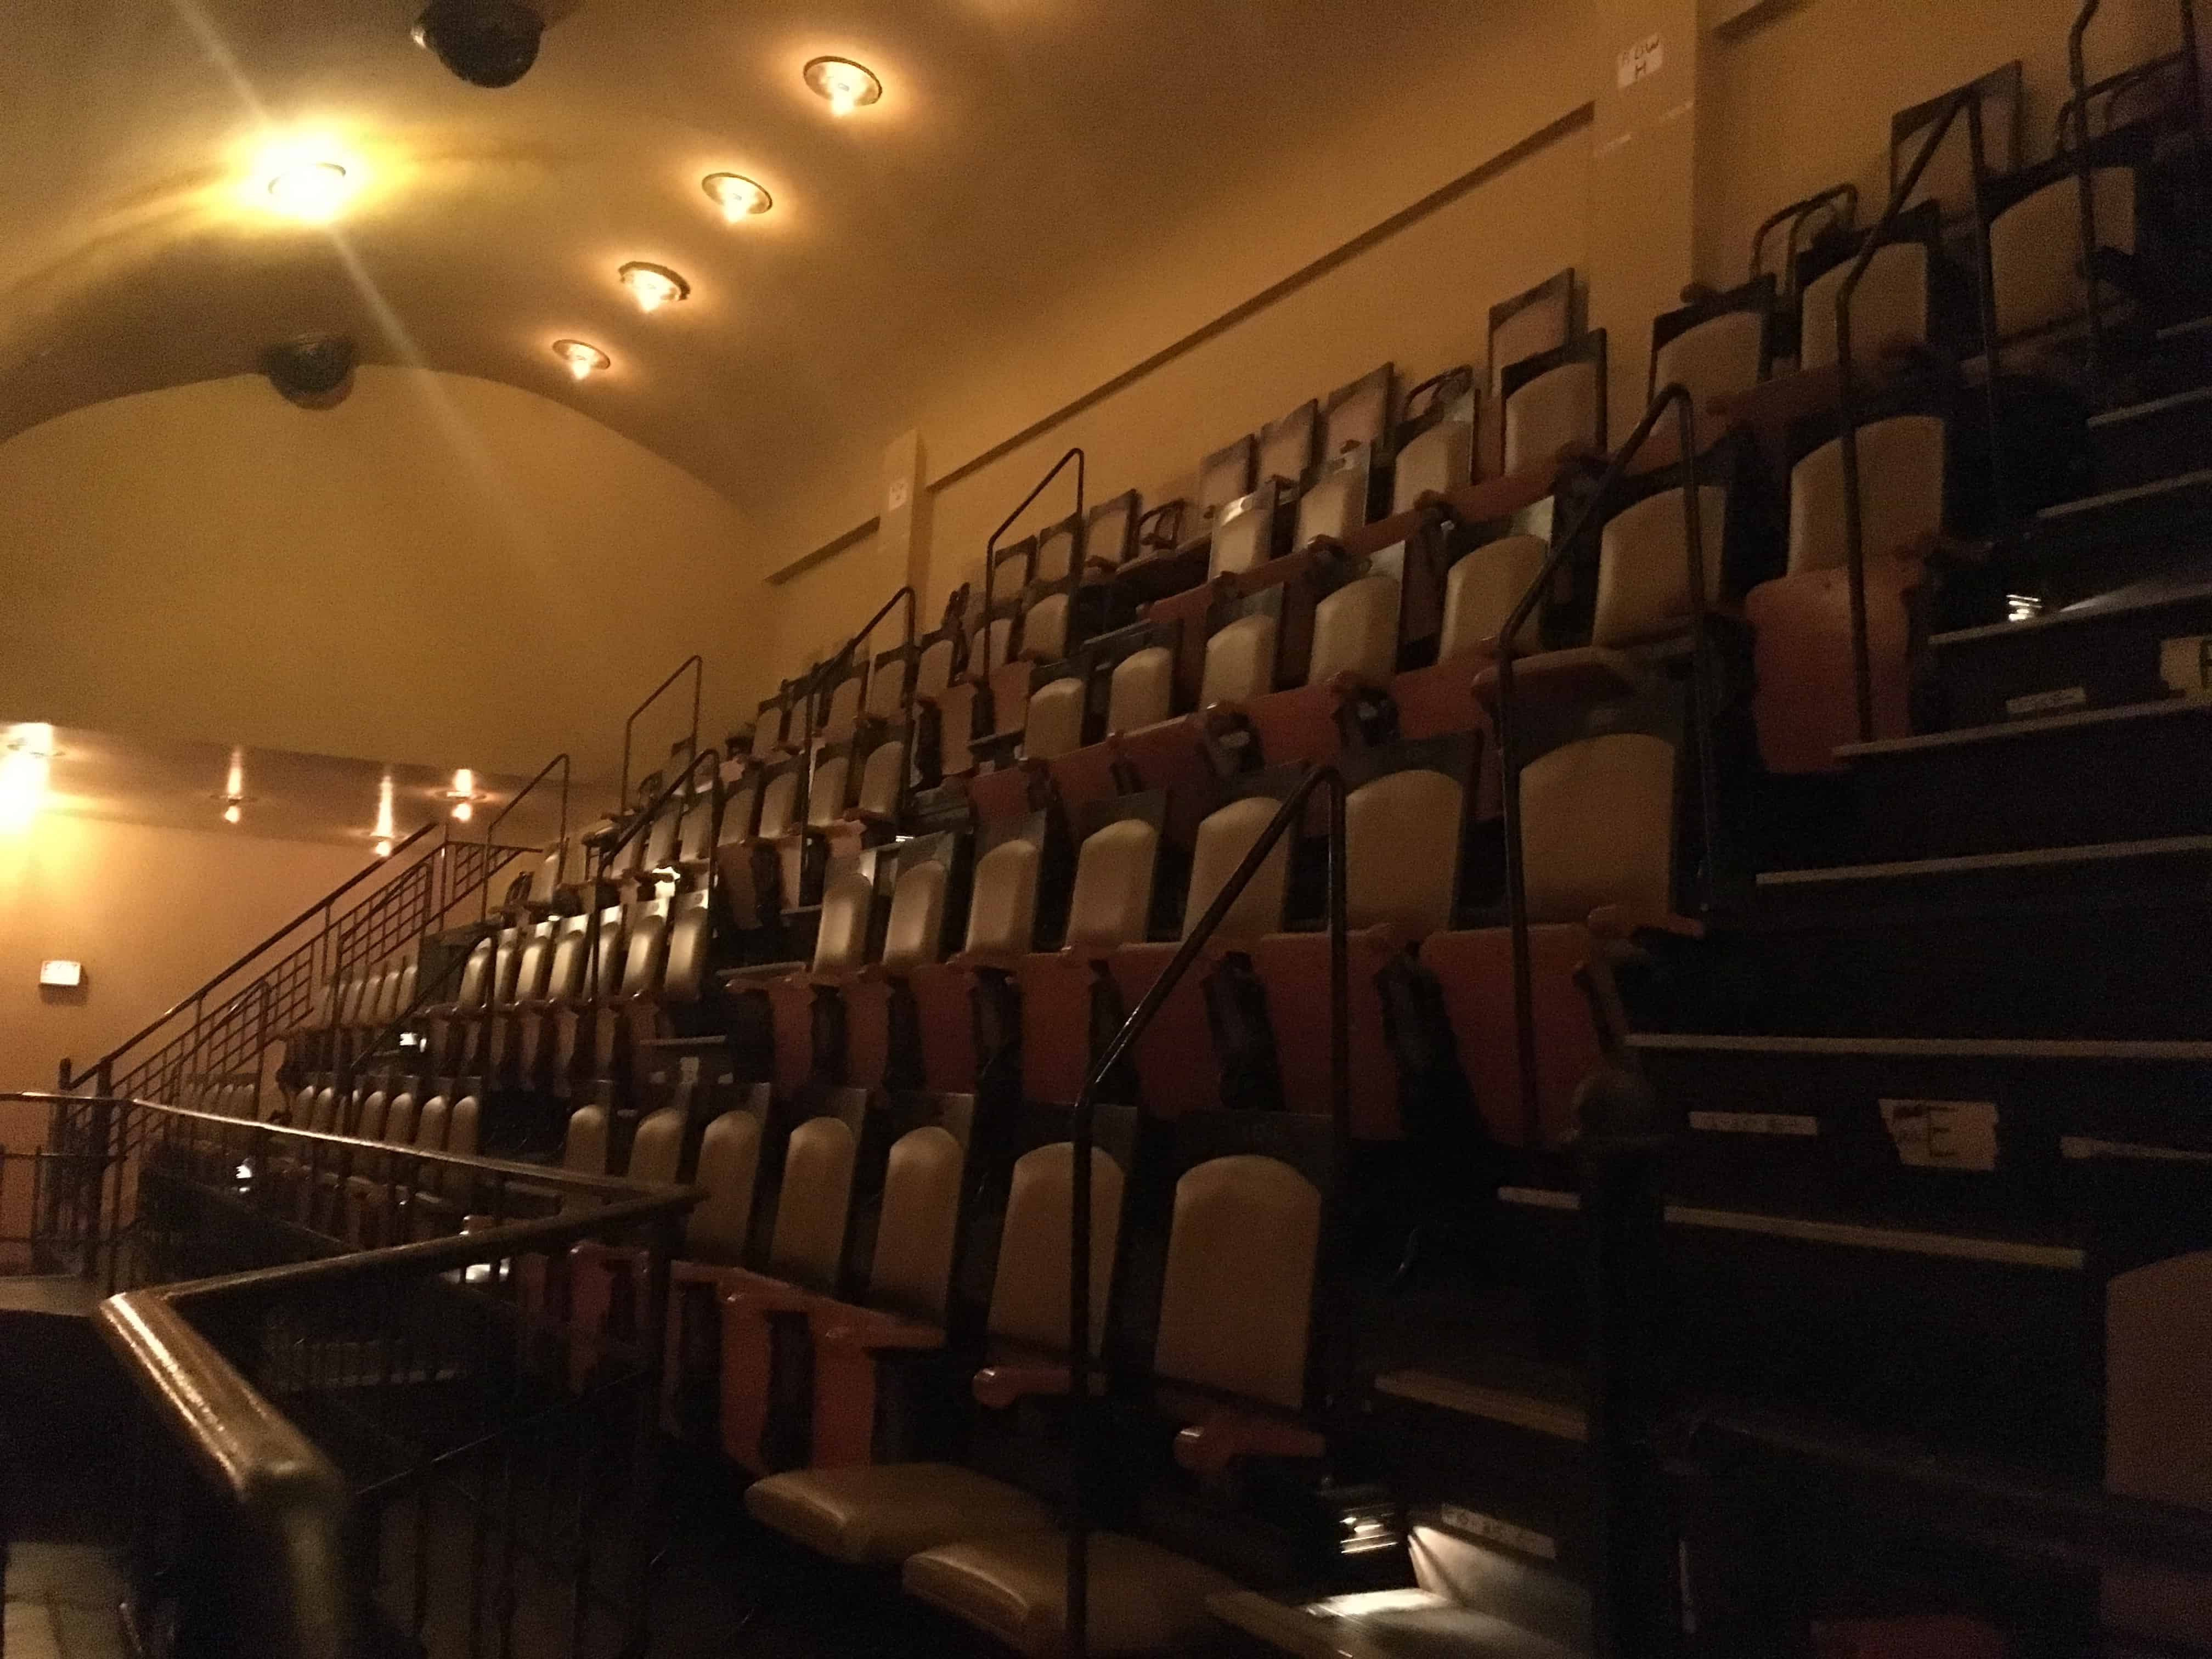 Original seats in the Auditorium Theatre in Chicago, Illinois